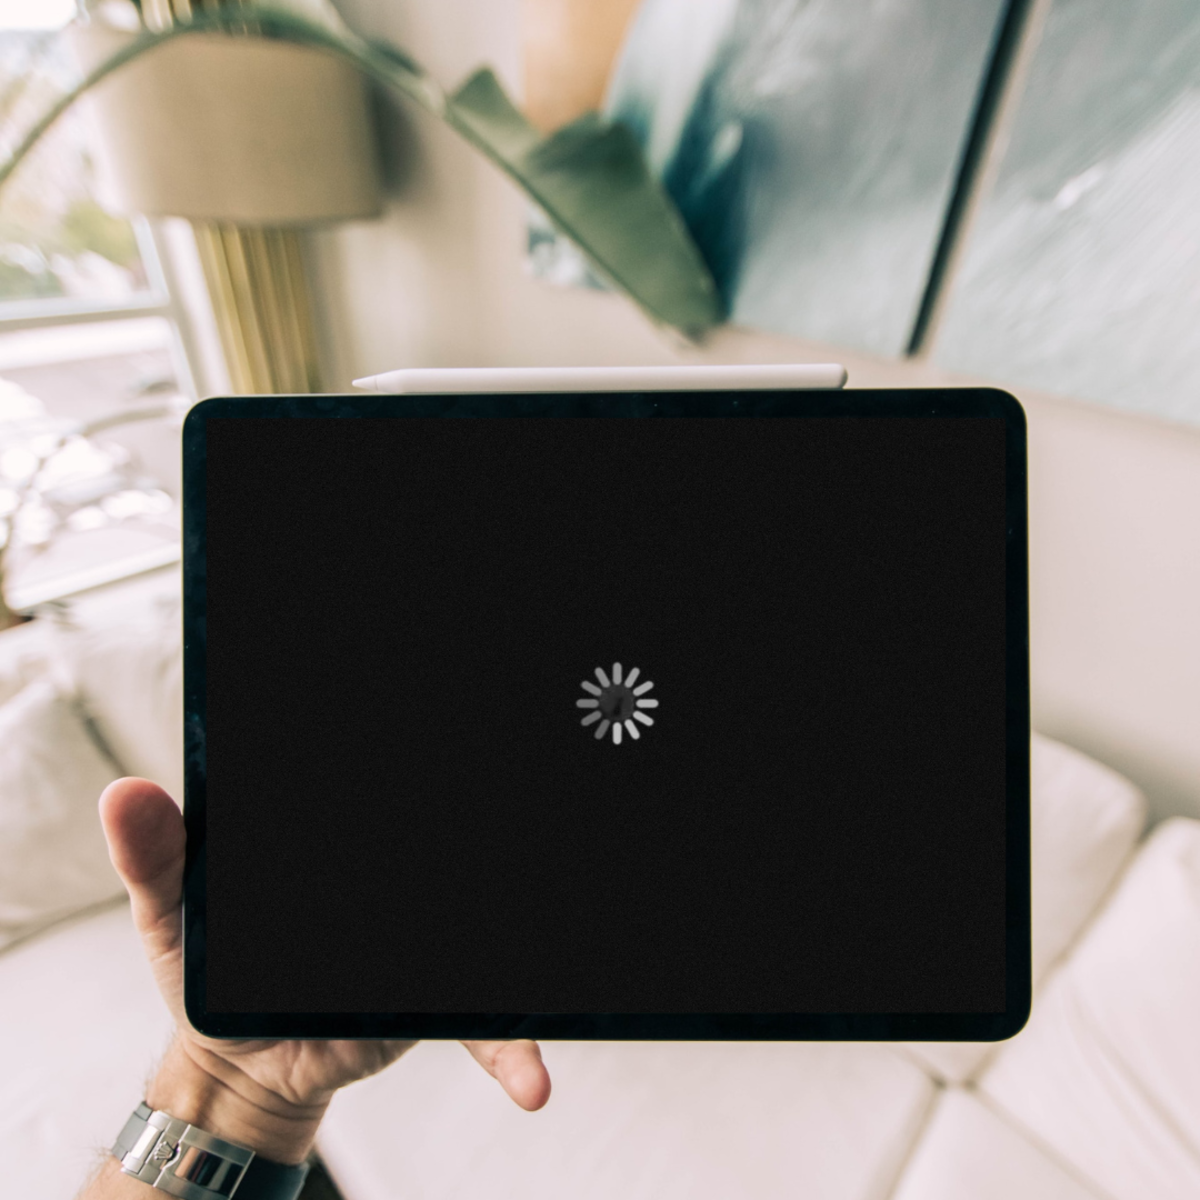 Nguyên nhân và 4 cách xử lý tình trạng iPad không lên nguồn tại nhà đơn giản nhất